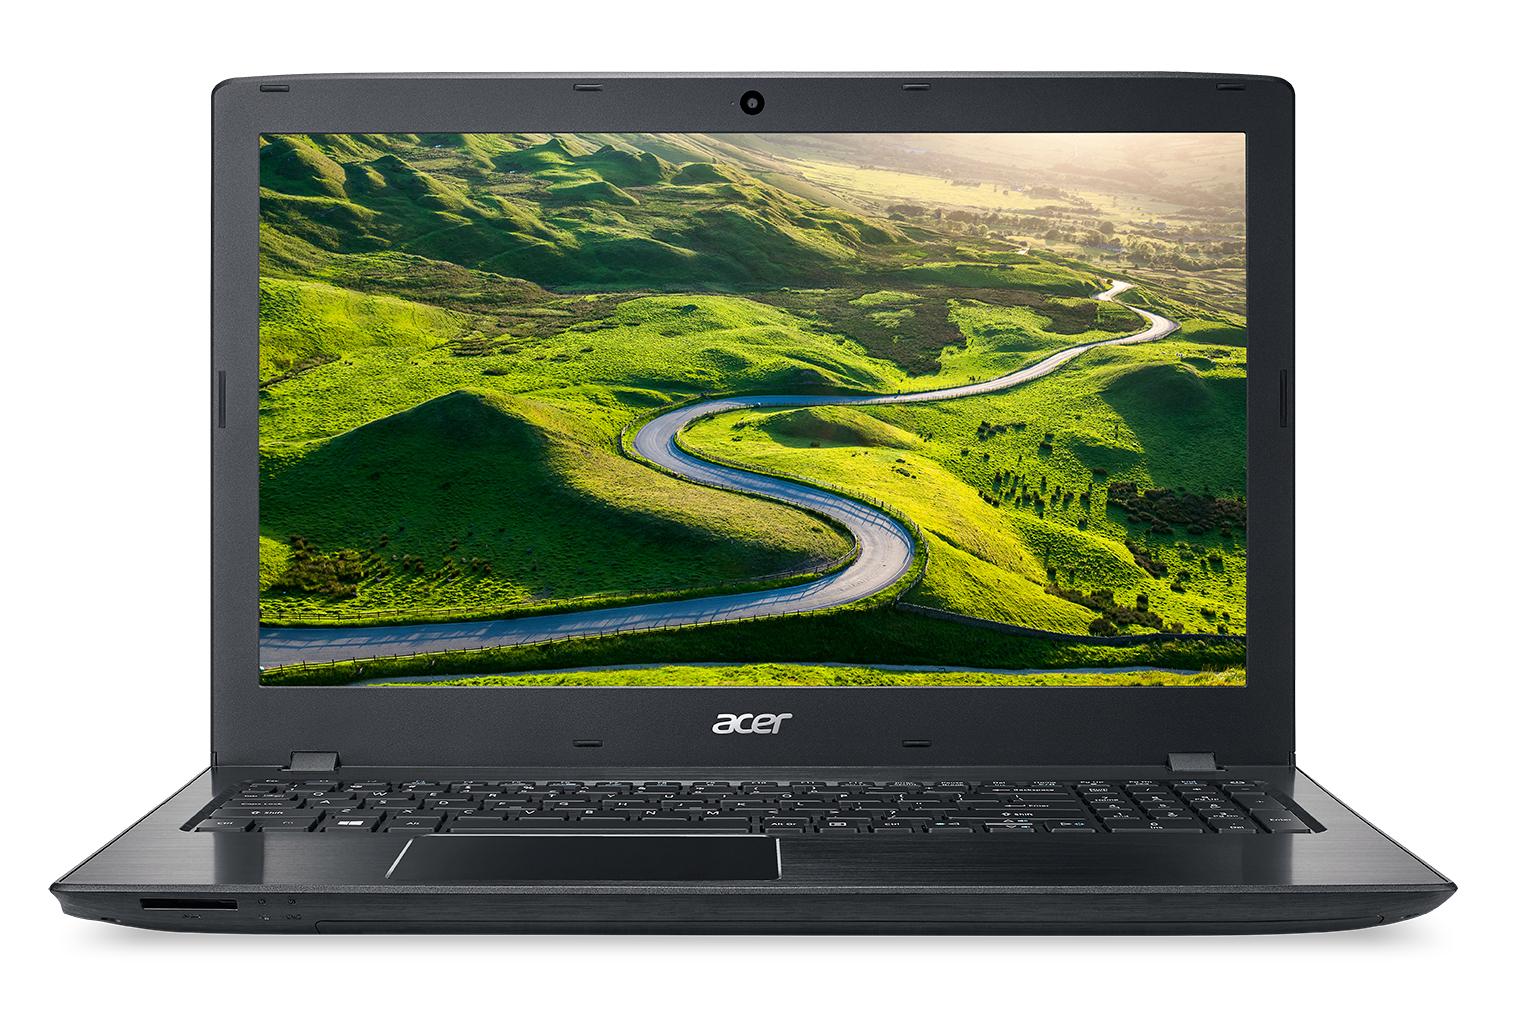 Portable Acer Aspire E5-575G-53K1 I5-7200U 8G 128G+1T GTX950 15.6